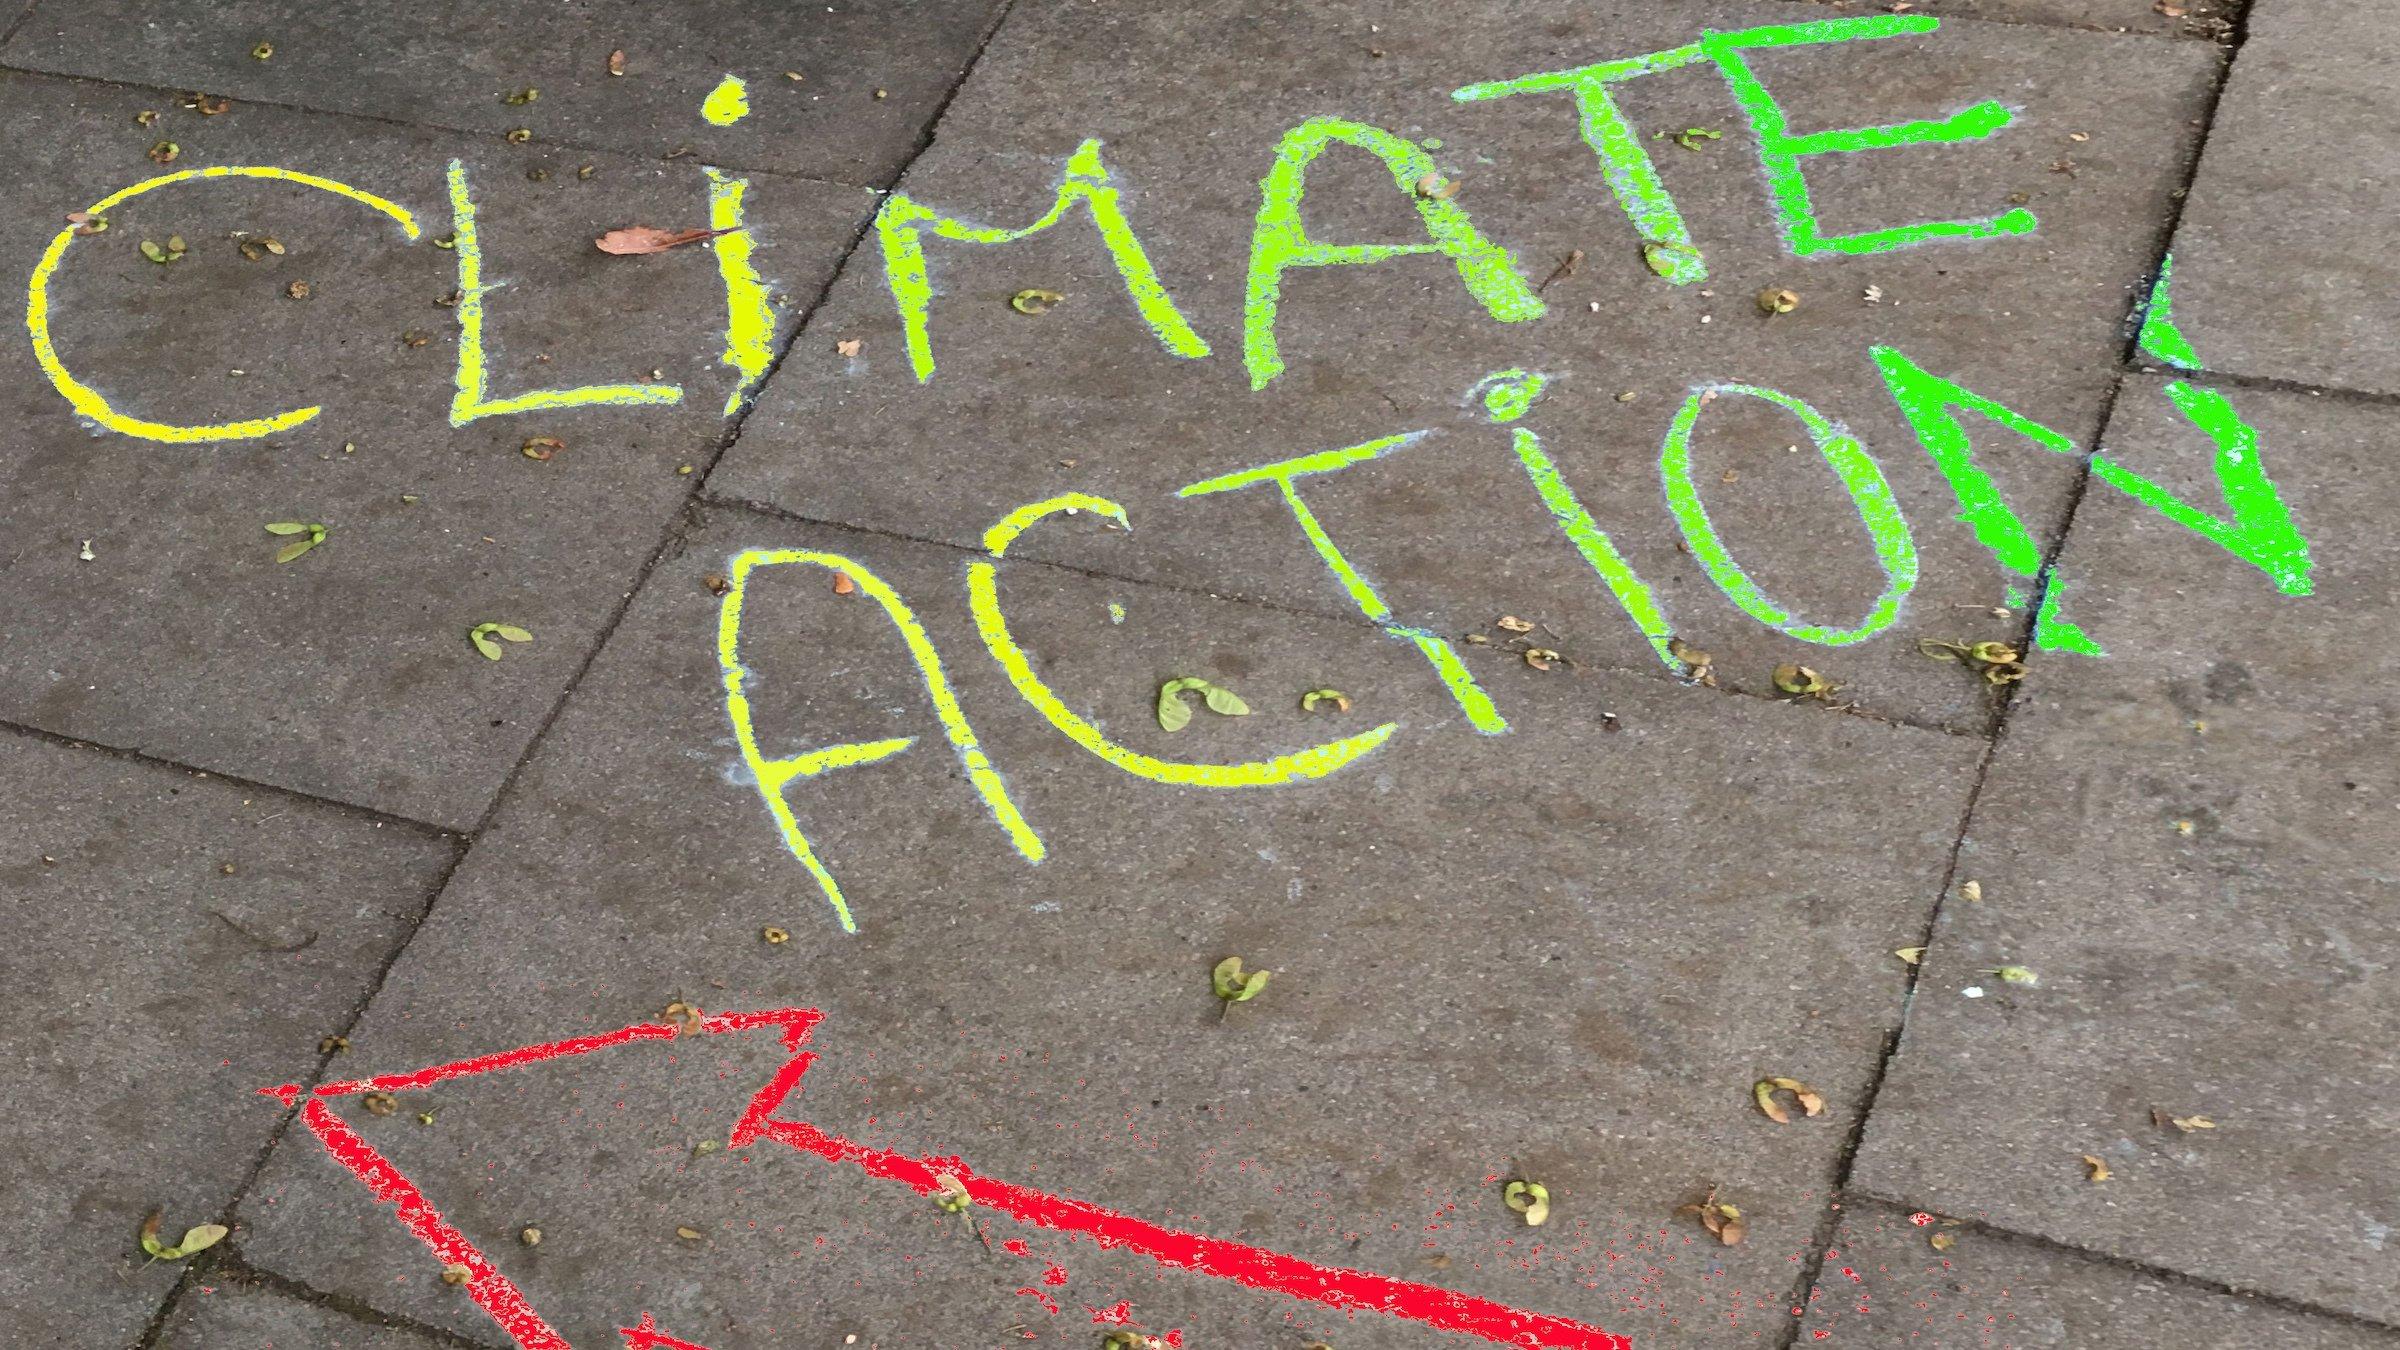 Die Worte Climate Action sind mit Kreide auf das Pflaster eines Gehweges beschrieben. Die Buchstaben sind von C bis E und von A bis N mit Farben von gelb bis grün eingefärbt. Darunter zeigt ein roter Kreide-Pfeil nach links.